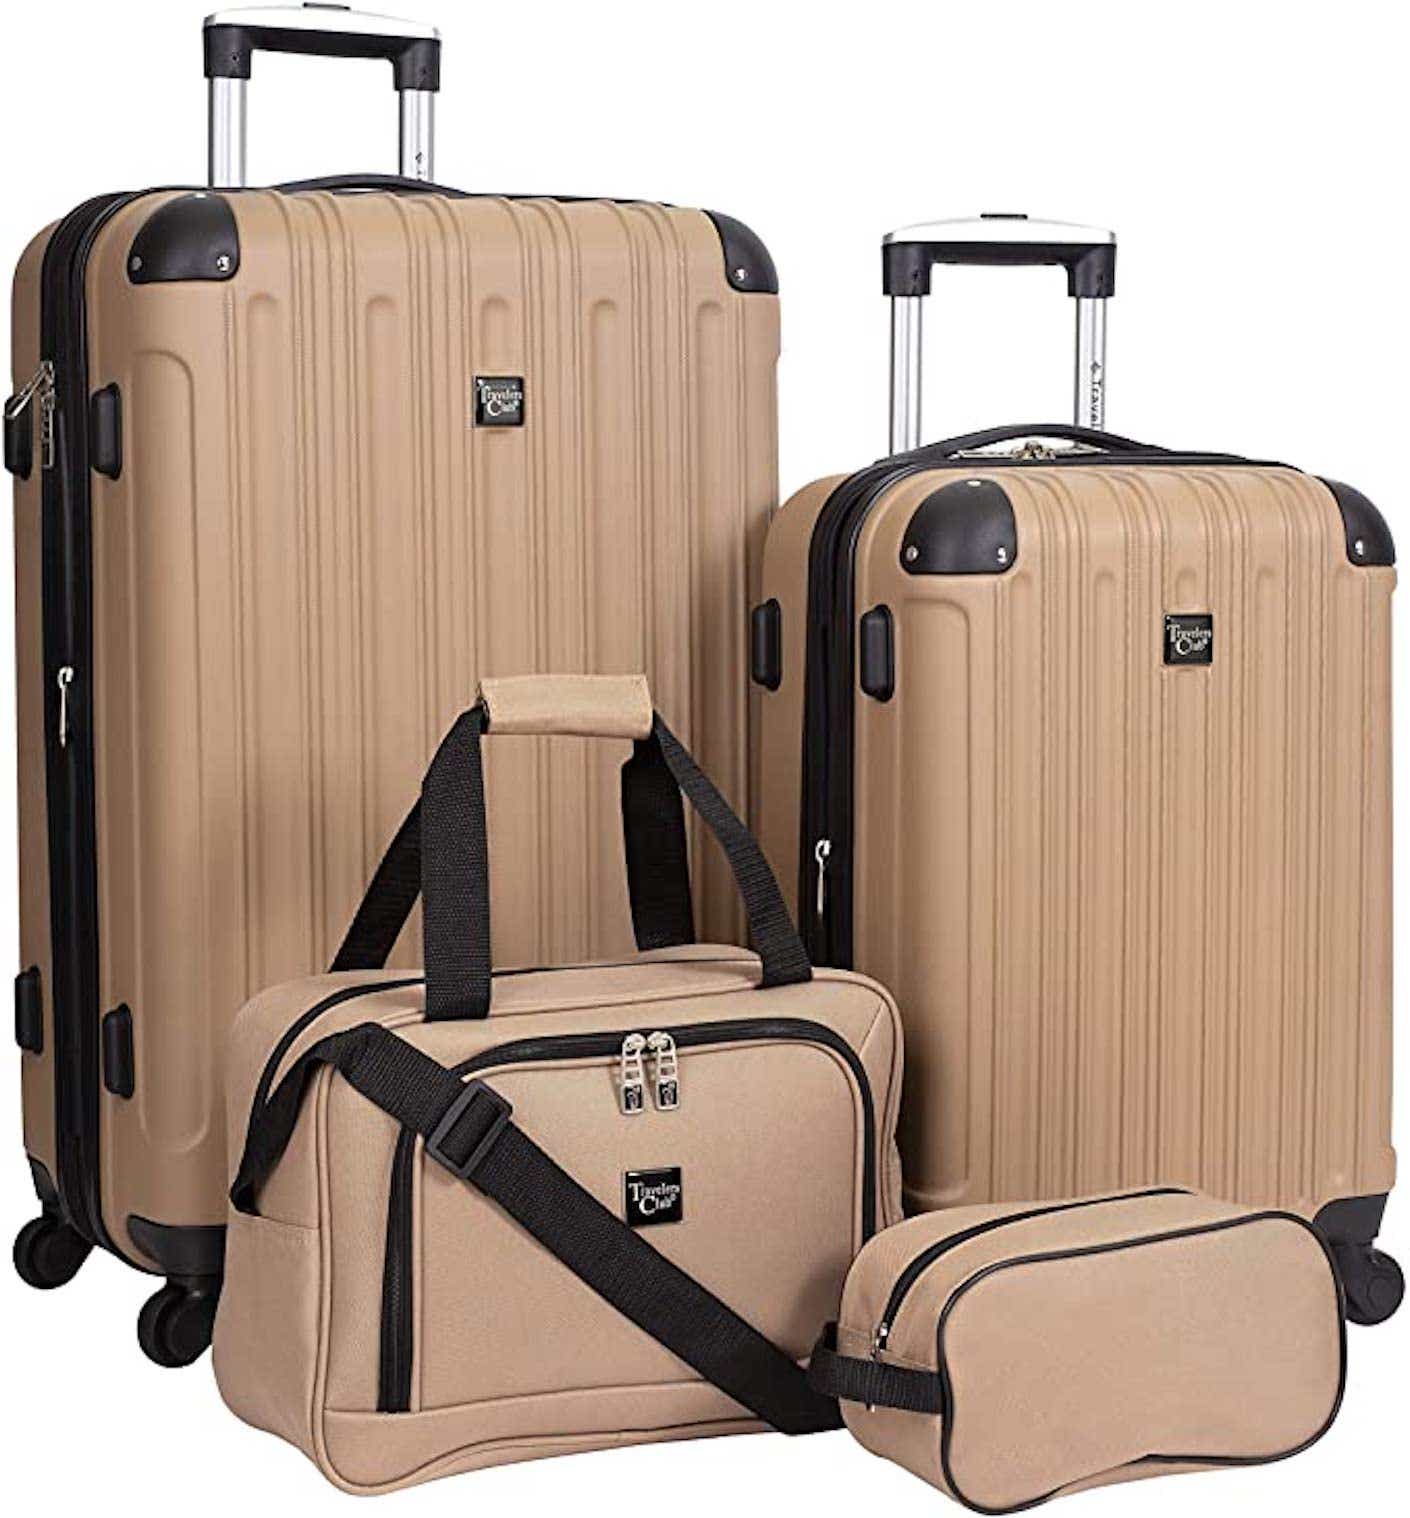 4-piece luggage set in beige